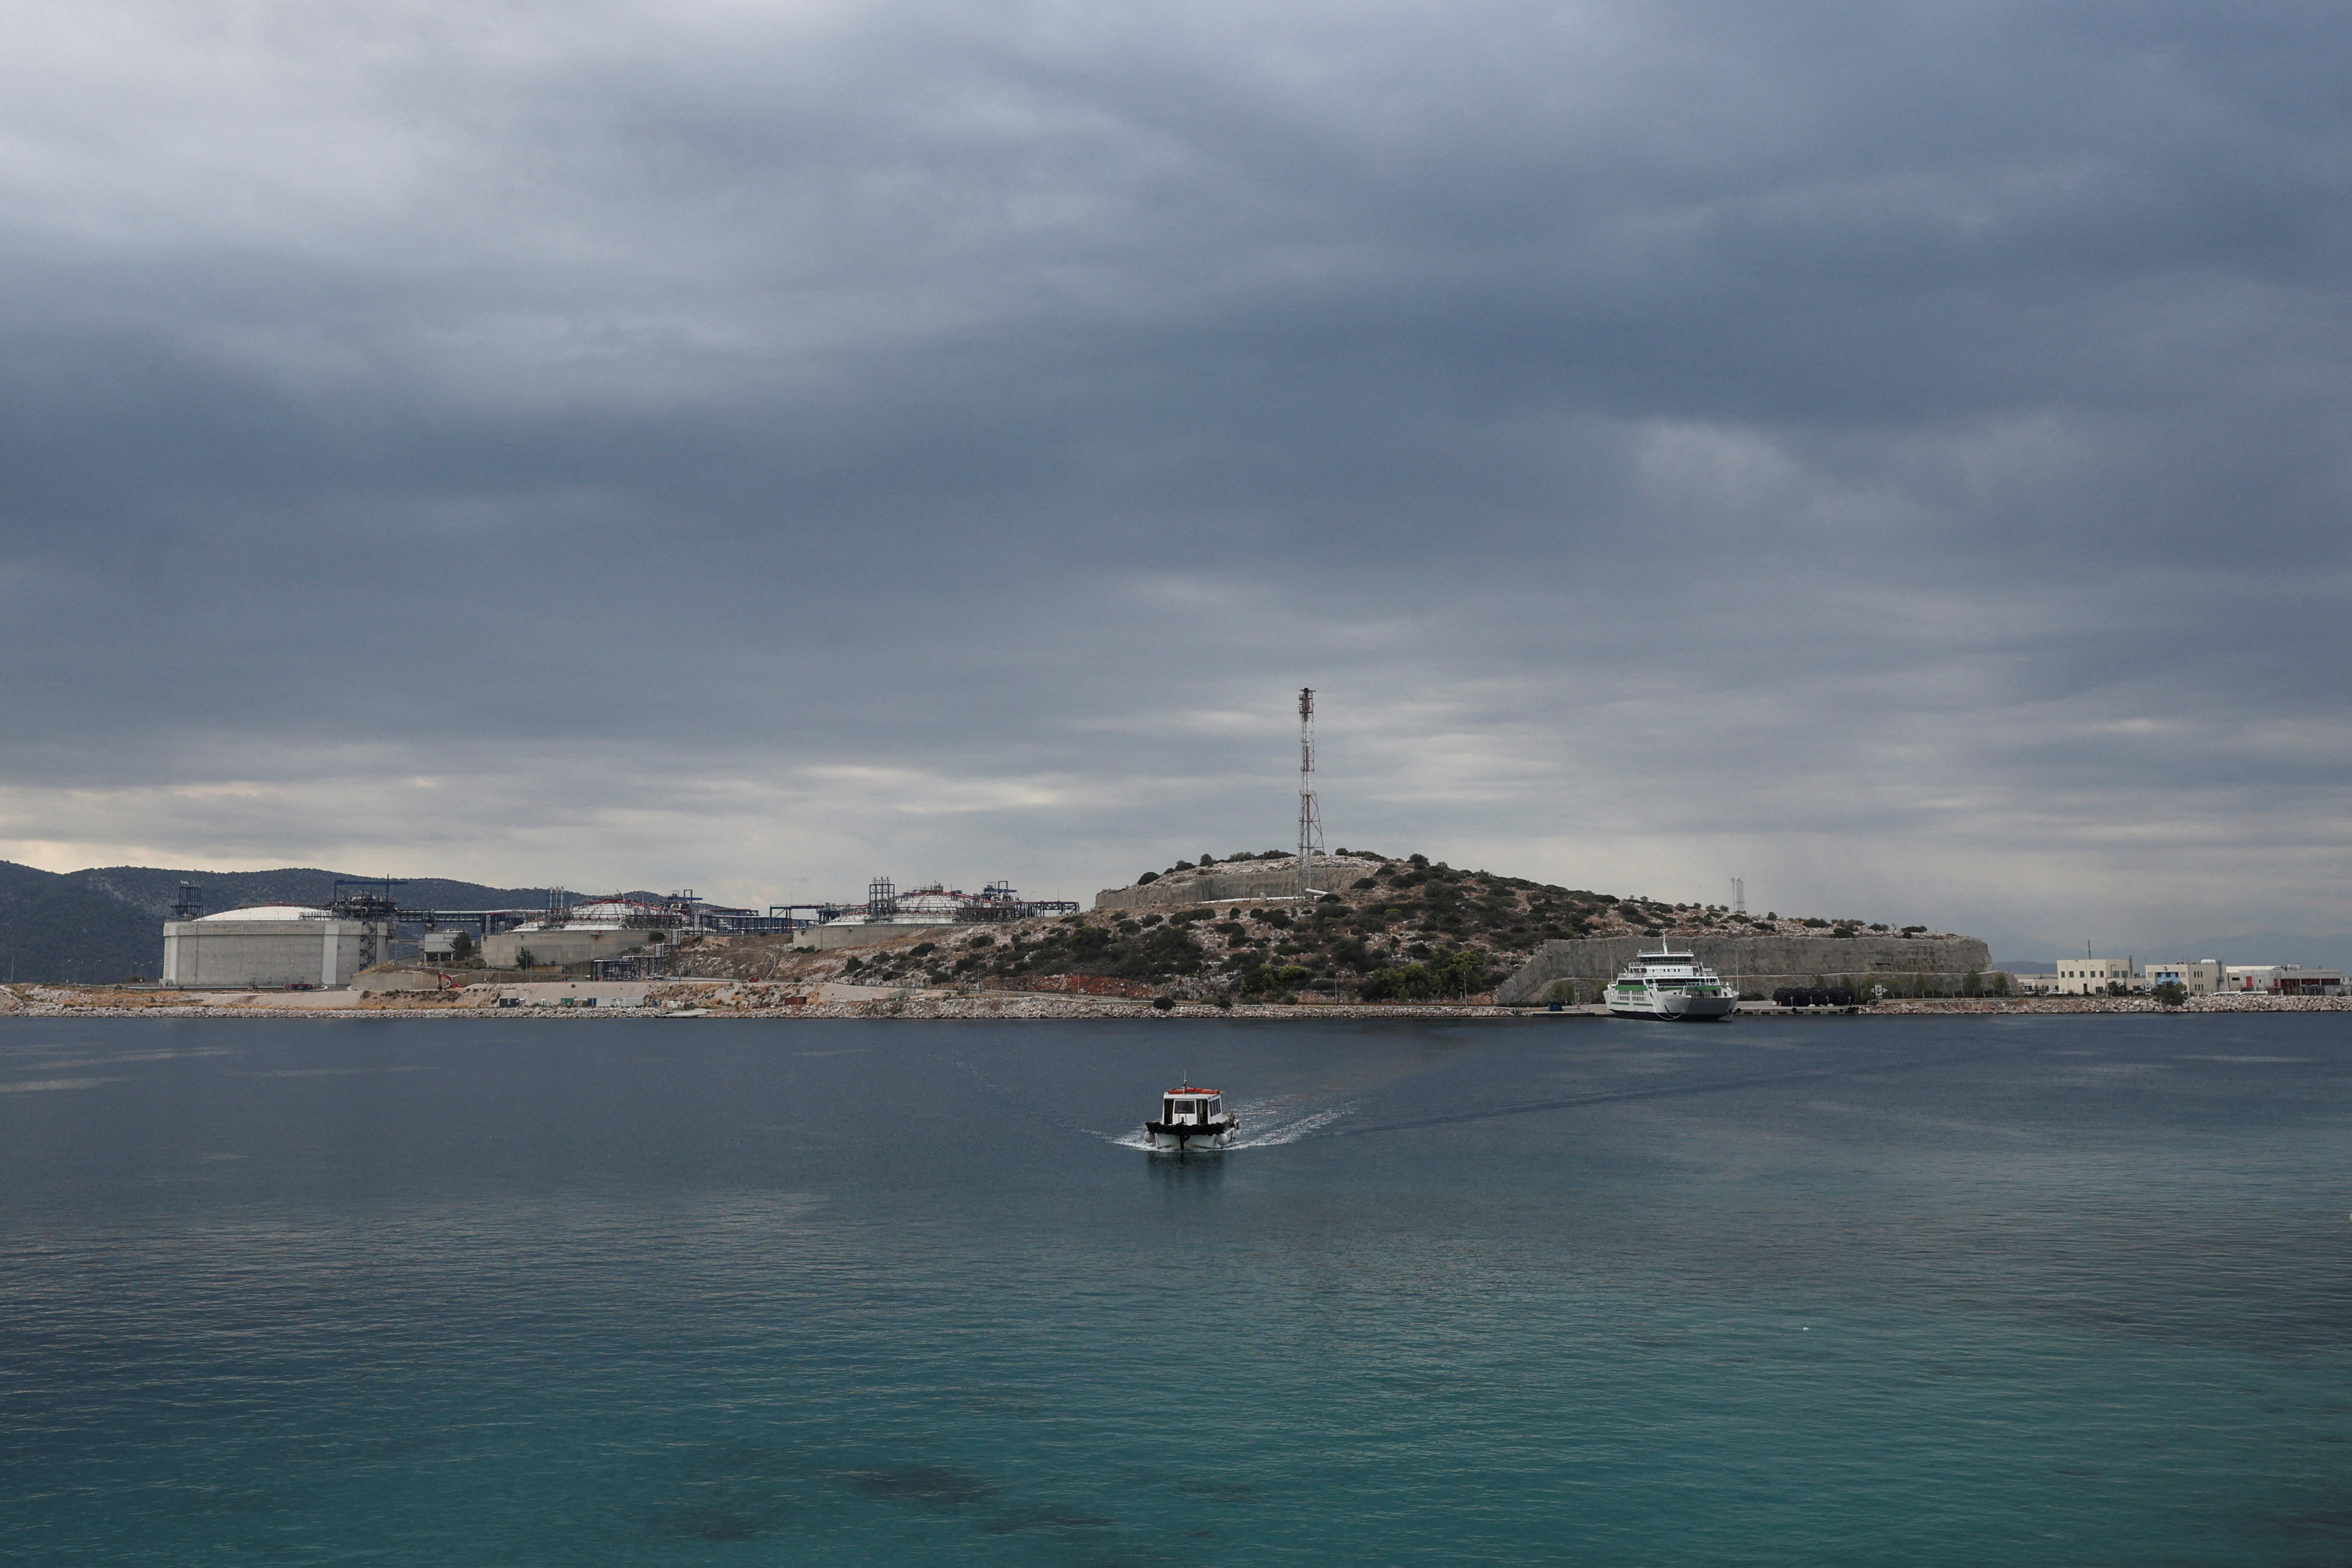 Greek gas operator DESFA LNG terminal, on the islet of Revithoussa